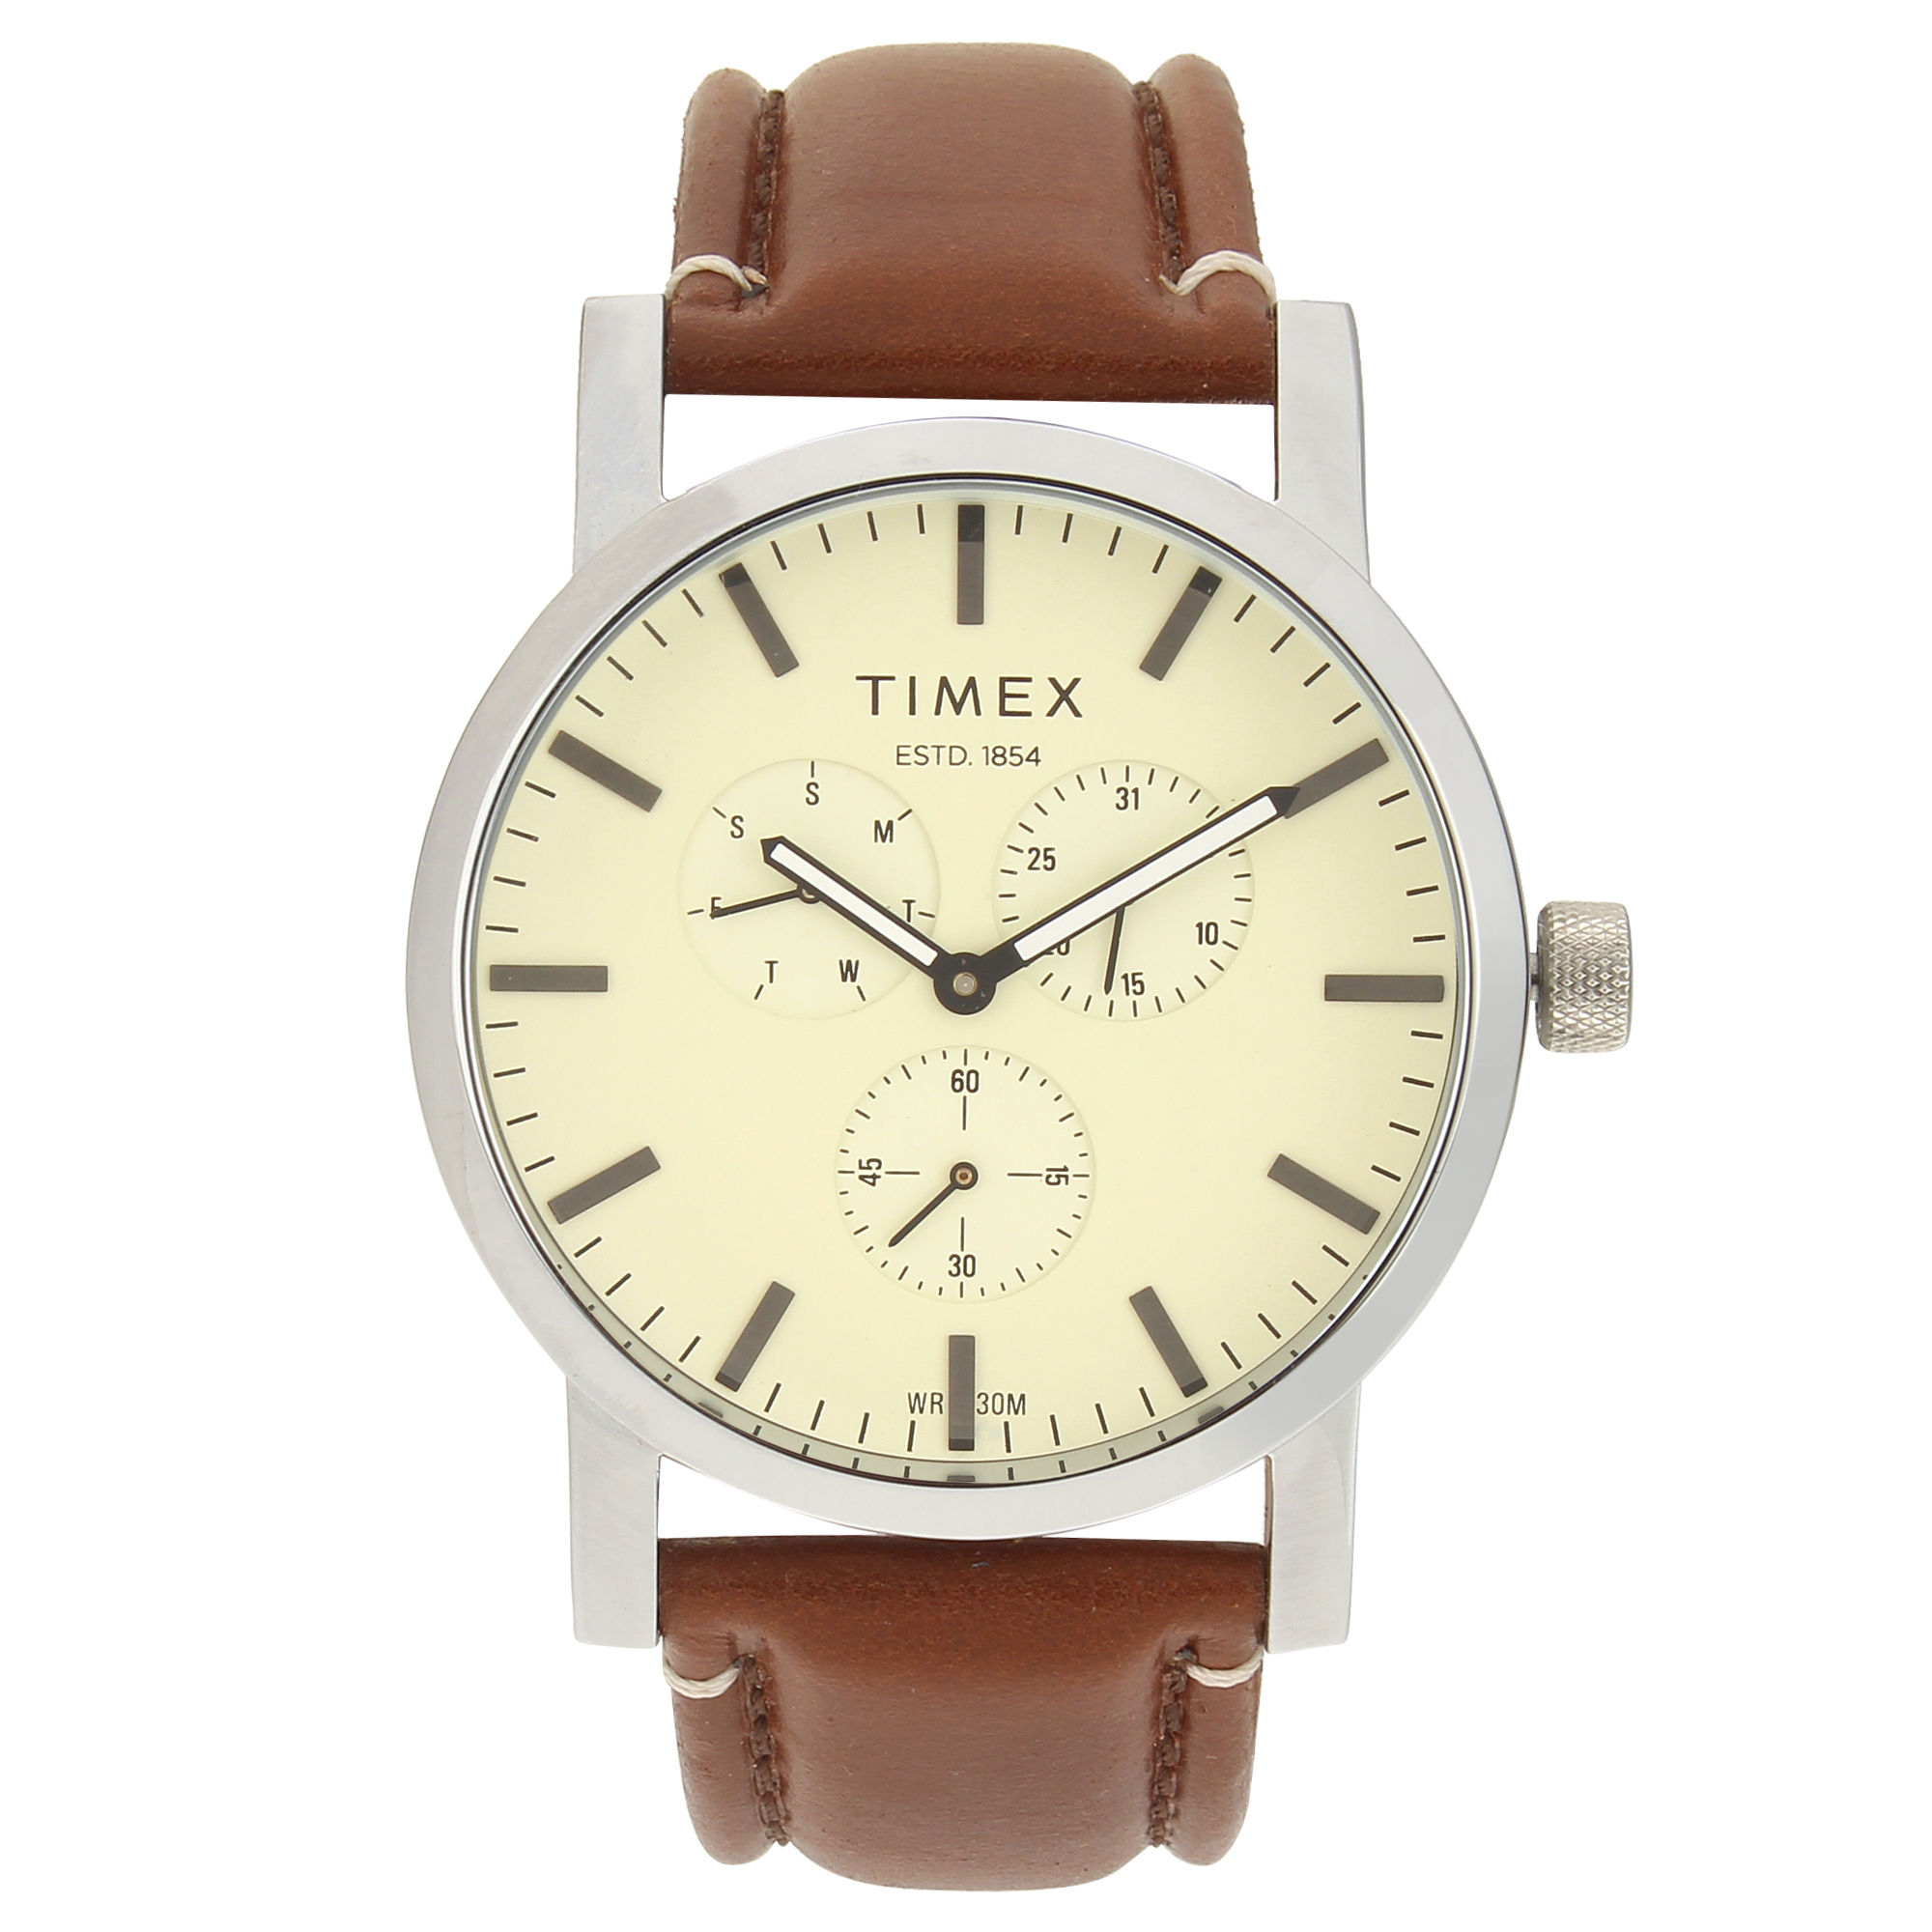 Timex Analog Beige Dial Men's Watch (TWEG16608)